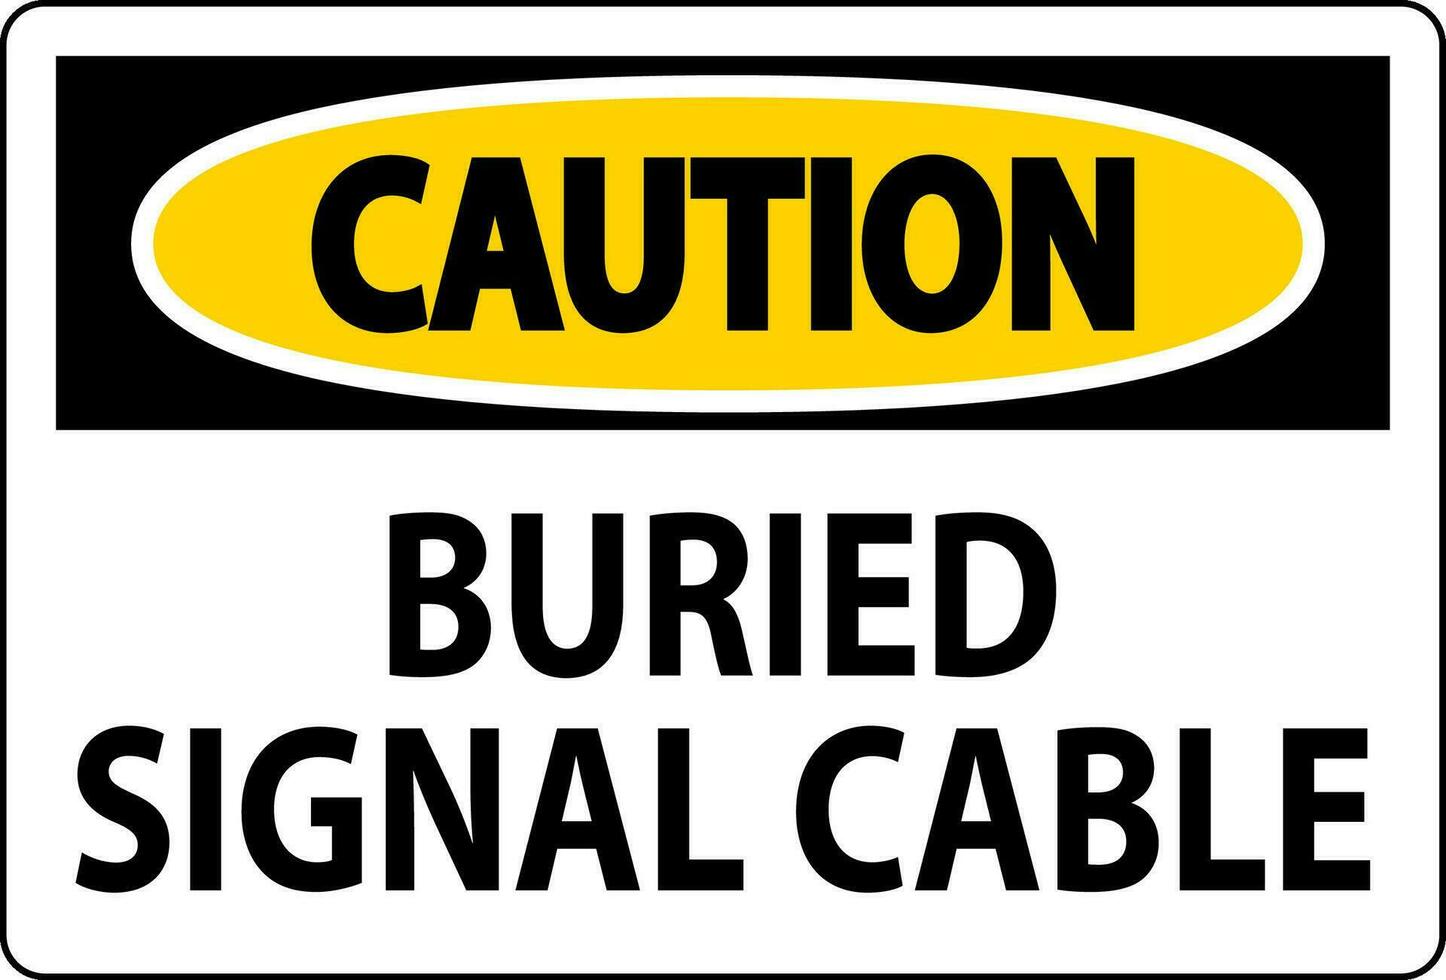 varning tecken, begravd signal kabel- tecken vektor